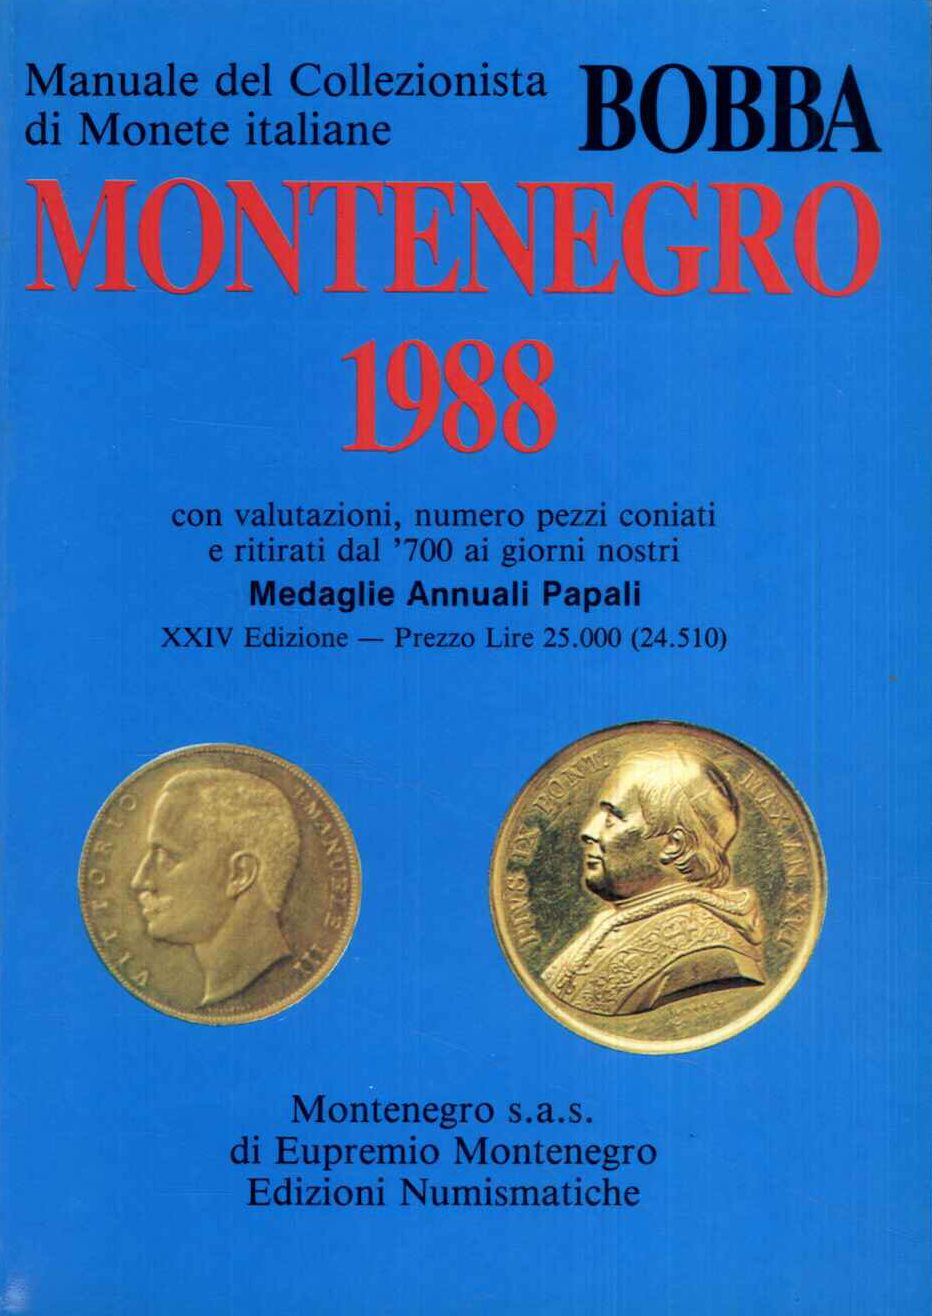 Bobba Montenegro 1988. Manuale del collezionista